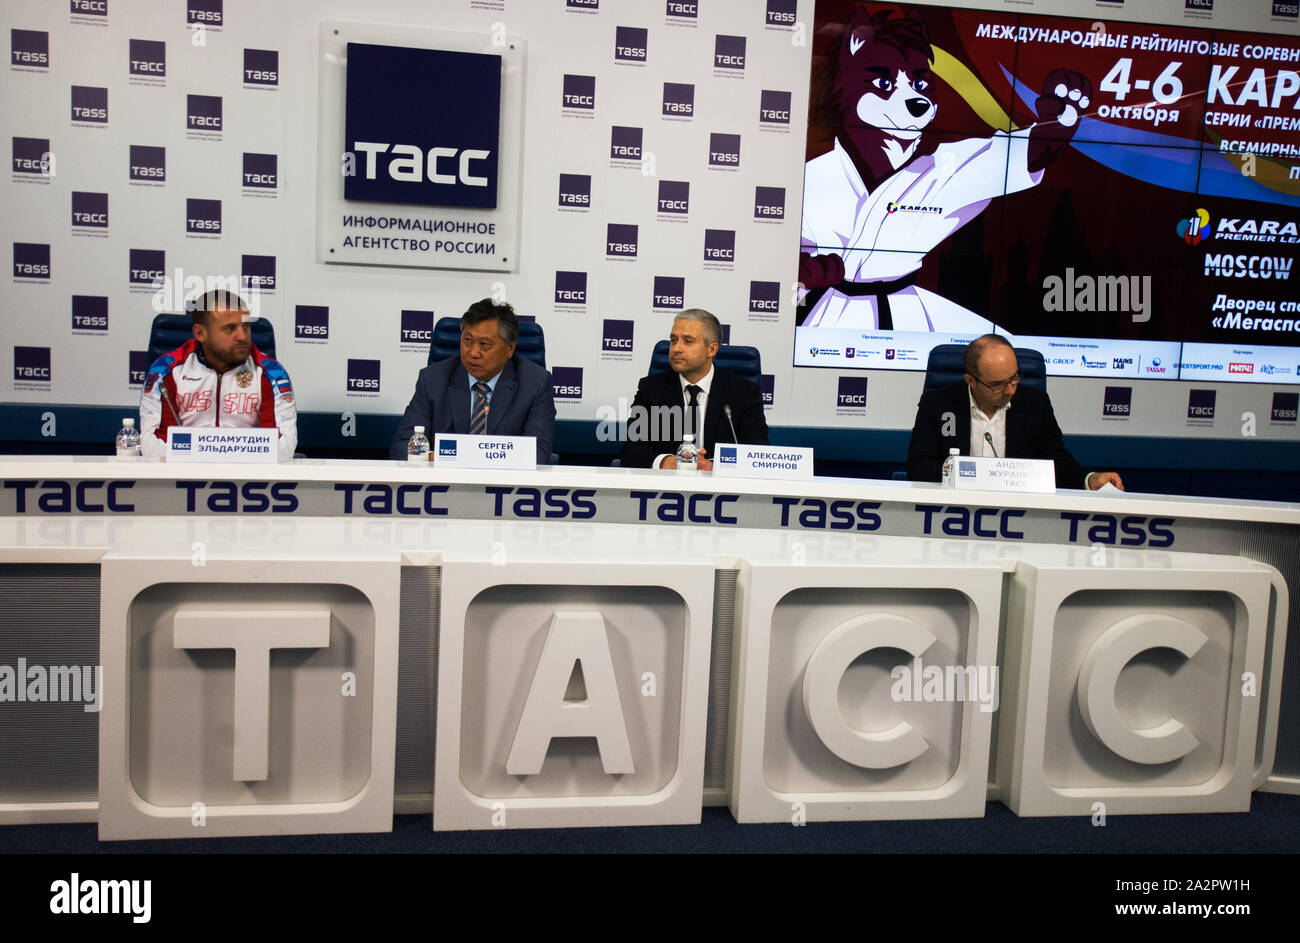 Moskau, Russland - OKTOBER 3, 2019: Pressekonferenz der Internationalen Karate Turnier "Karate 1 - Premier League' am 03.10.2019 in TASS-Center, Moskau, Russland Stockfoto